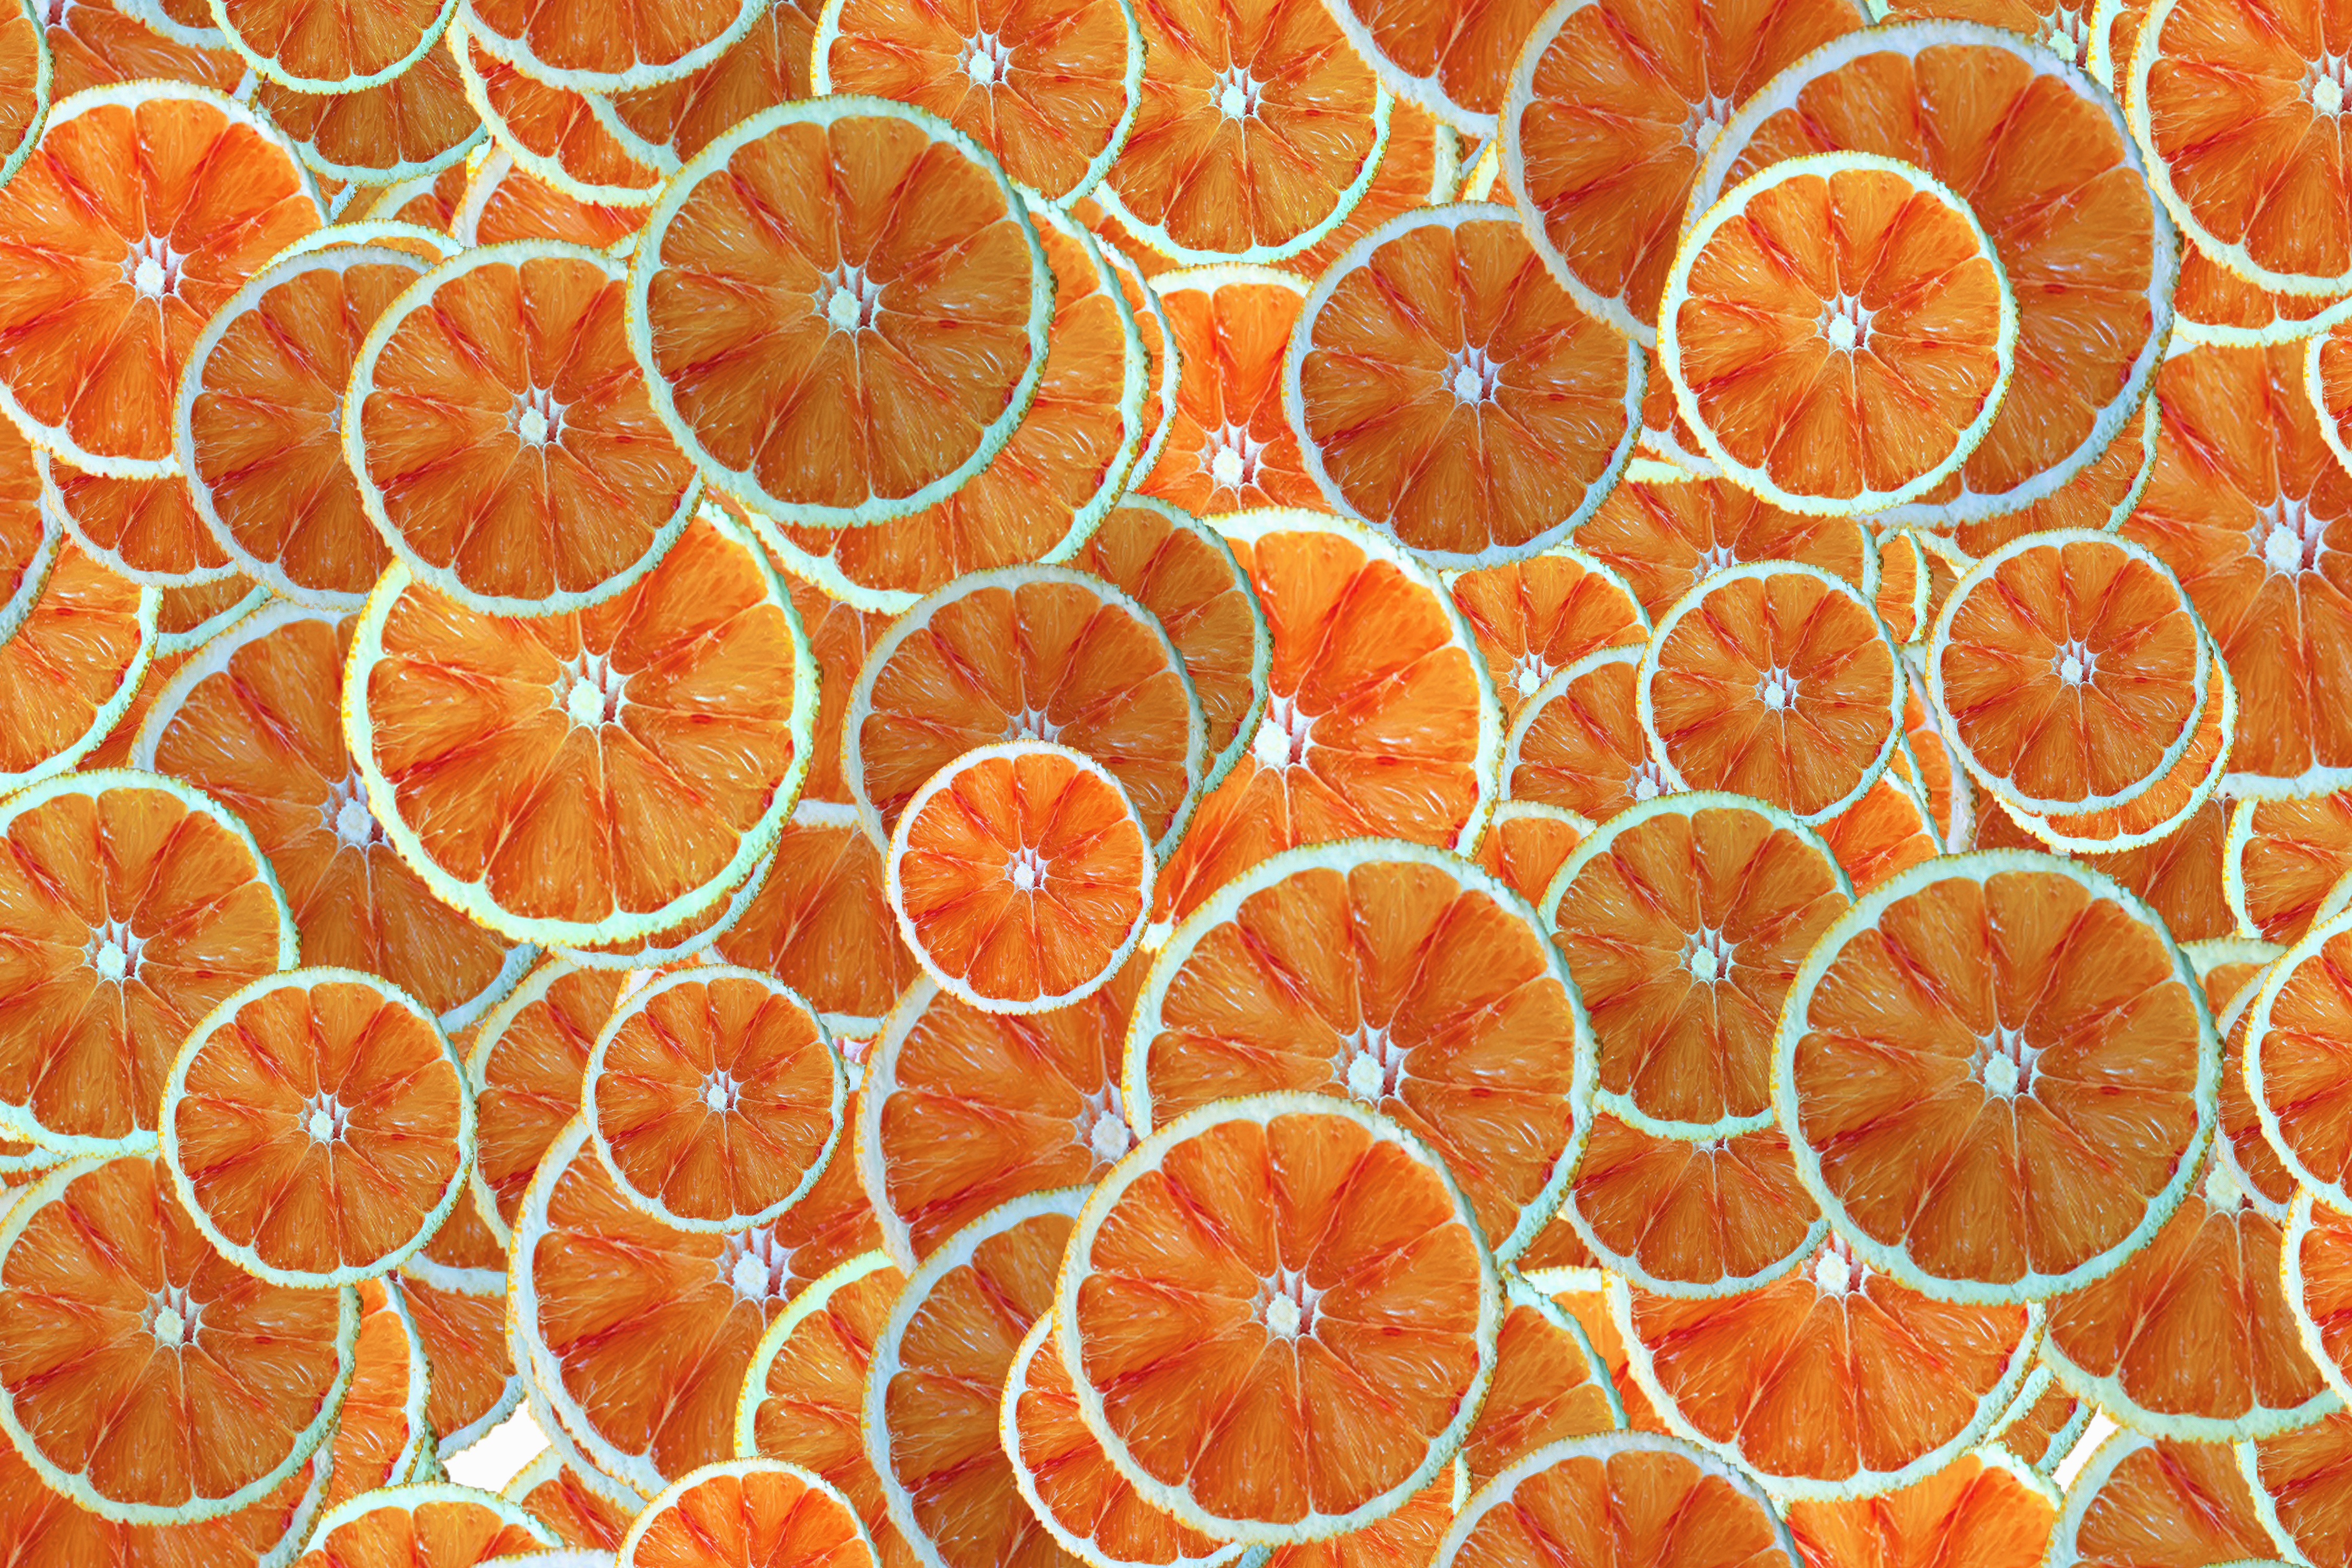 65331 Обои и Апельсины картинки на рабочий стол. Скачать  заставки на ПК бесплатно